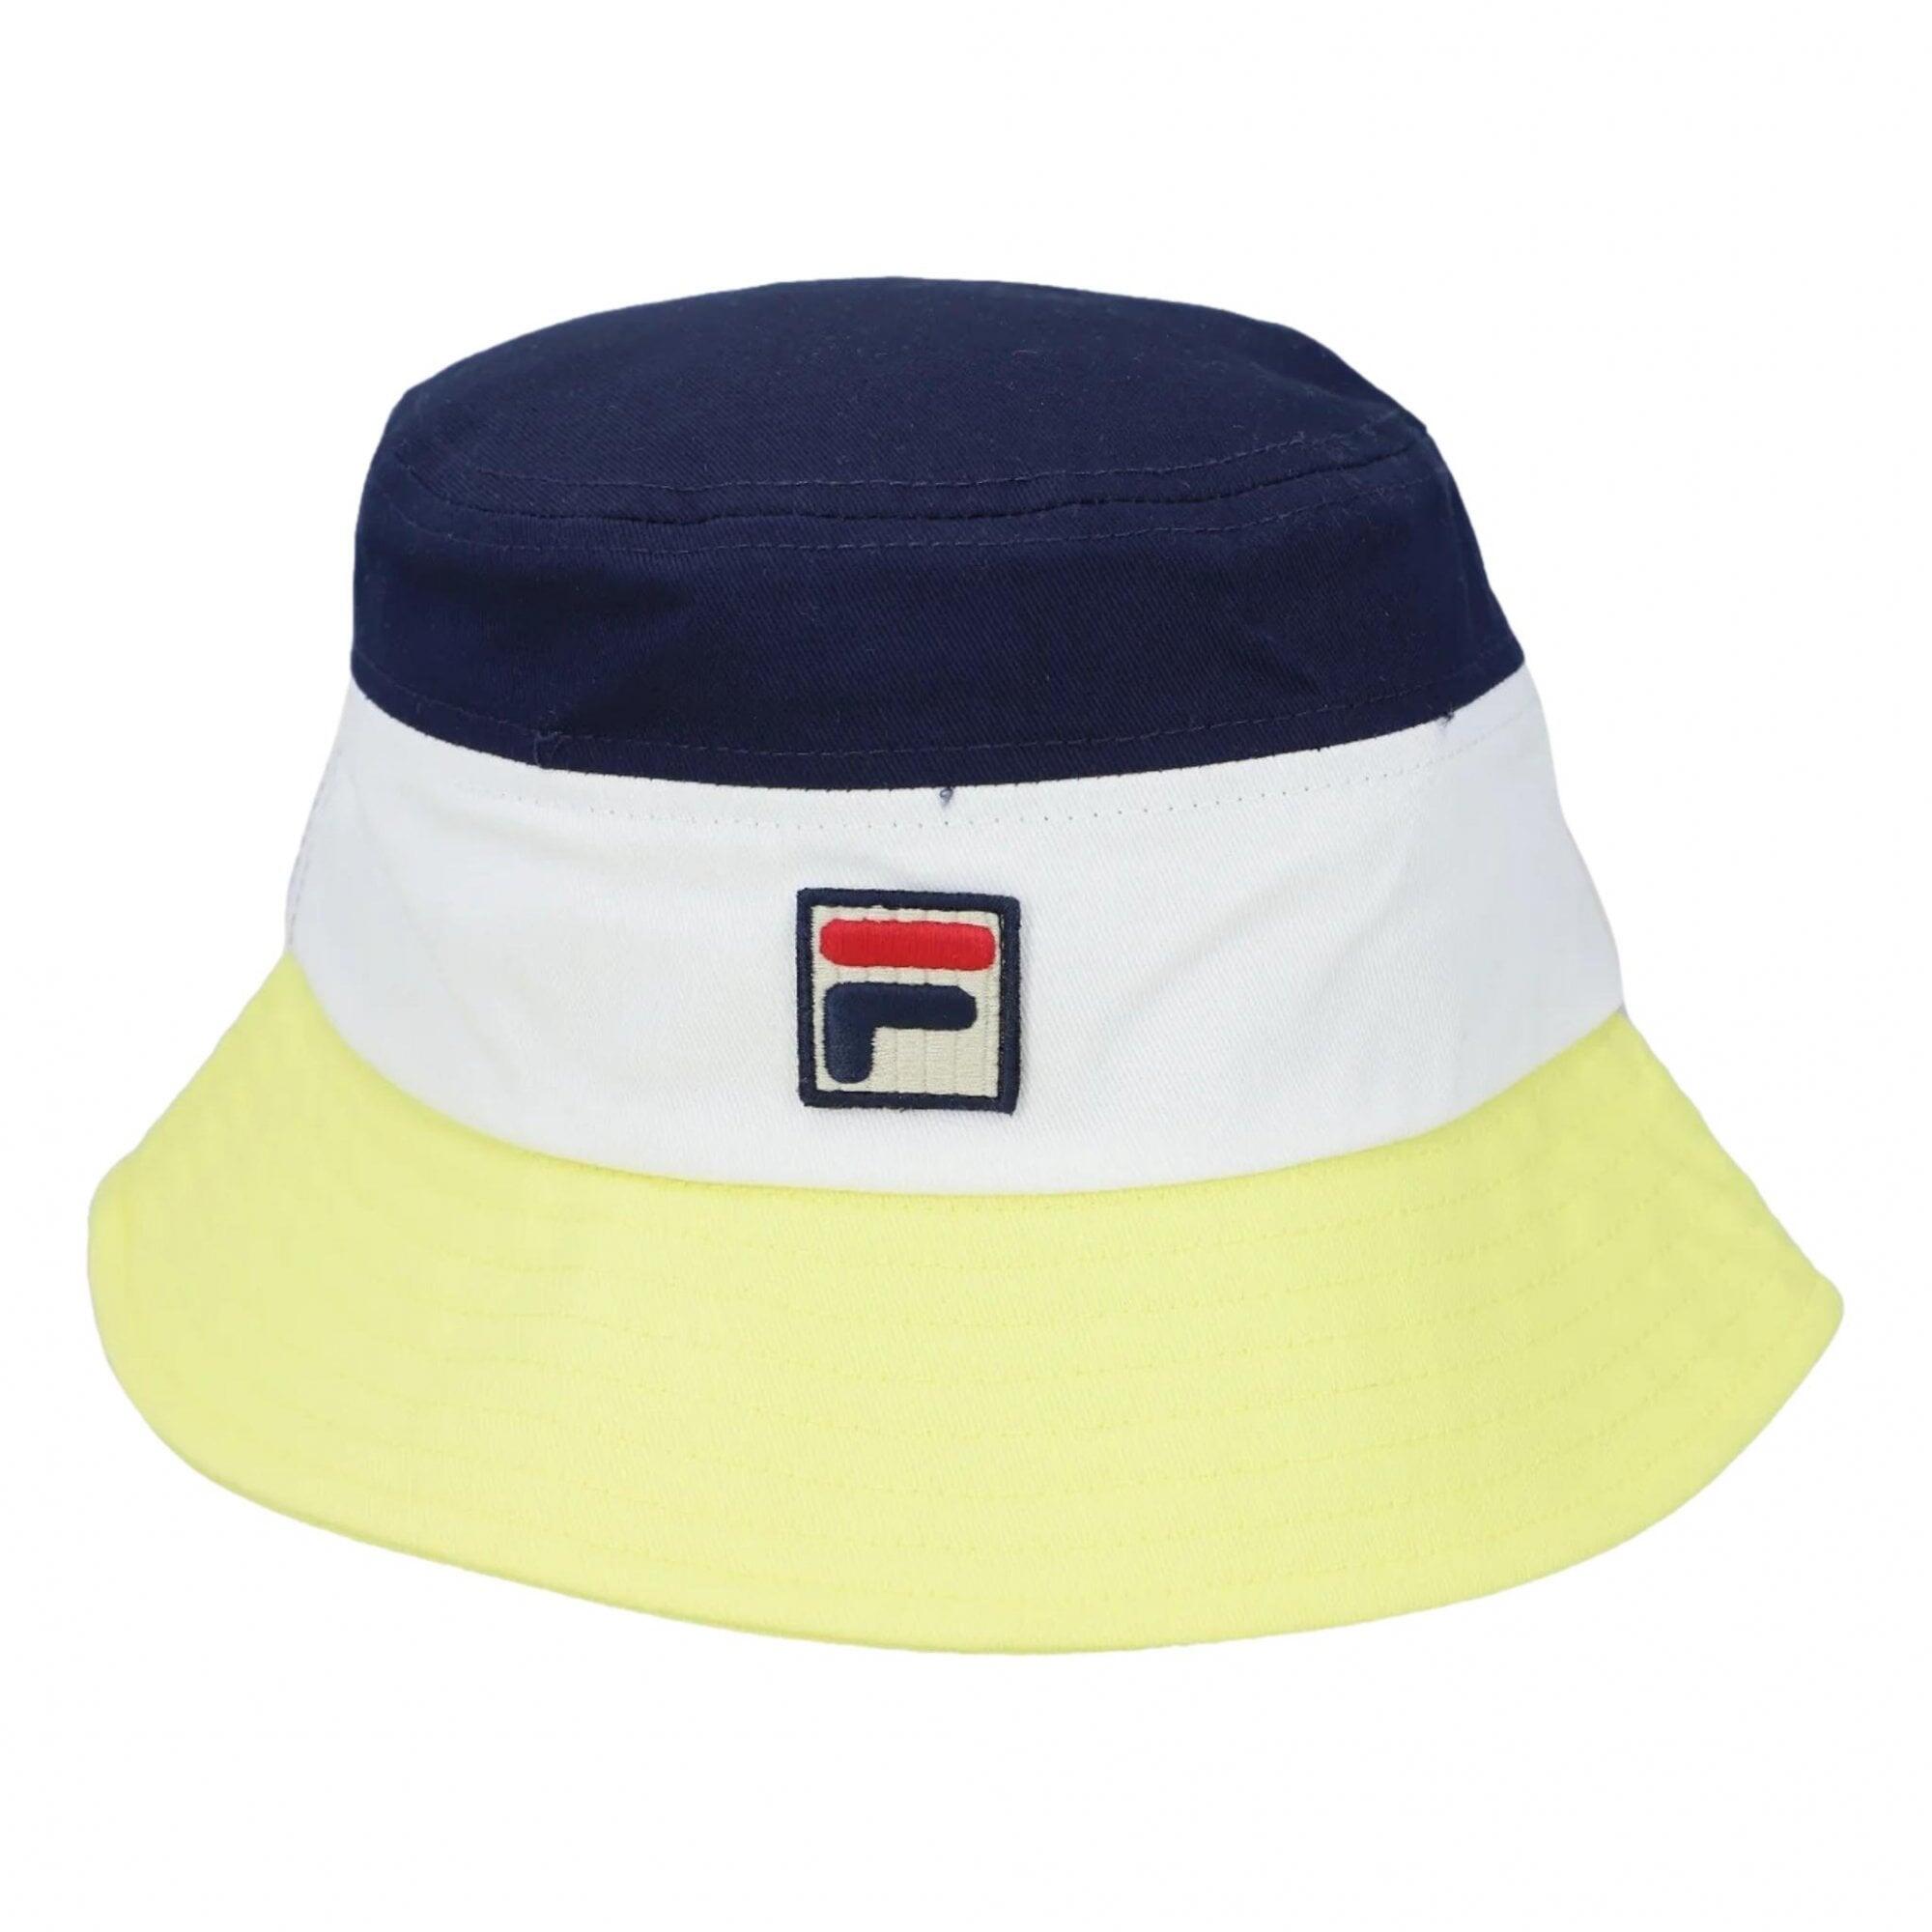 FILA Fila Leader Bucket Hat - Lime Light / Gardenia / Fila Navy